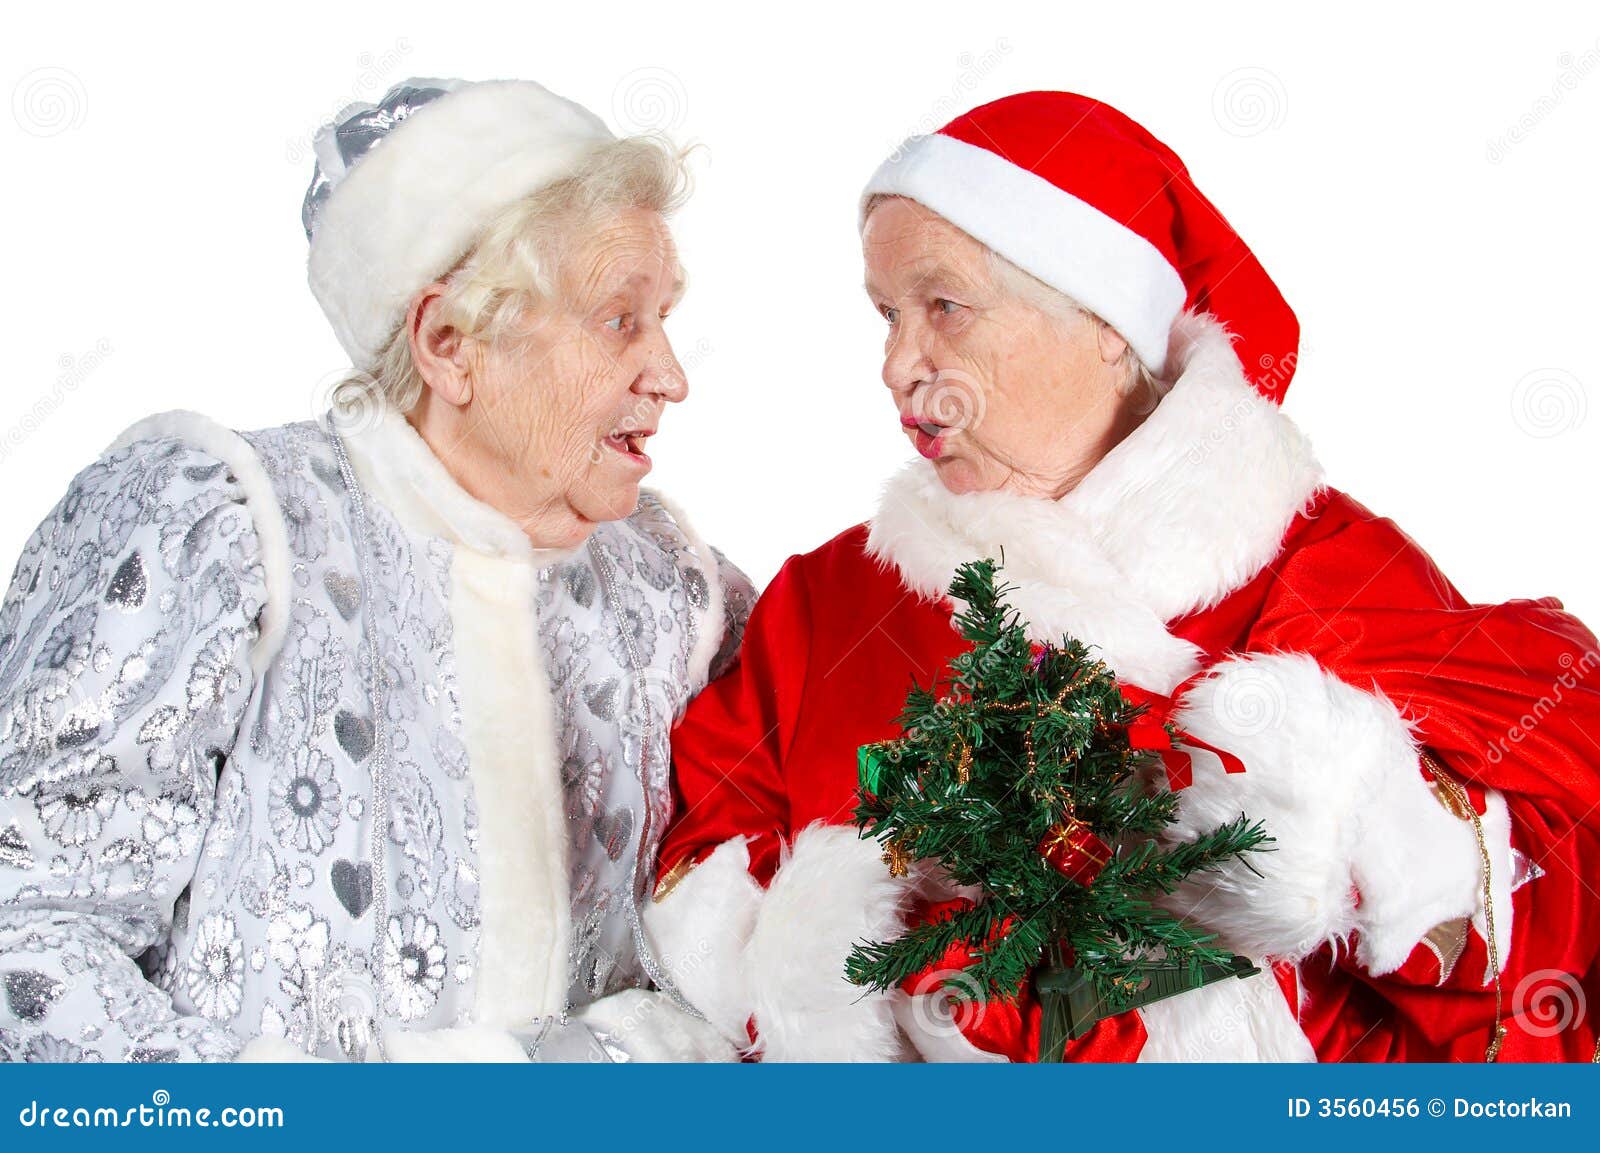 Под новый год бабушка всегда почему то. Новый год для пожилых. Дед Мороз пенсионер. Новый год пожилые люди. Пенсионеры новогодний праздник.